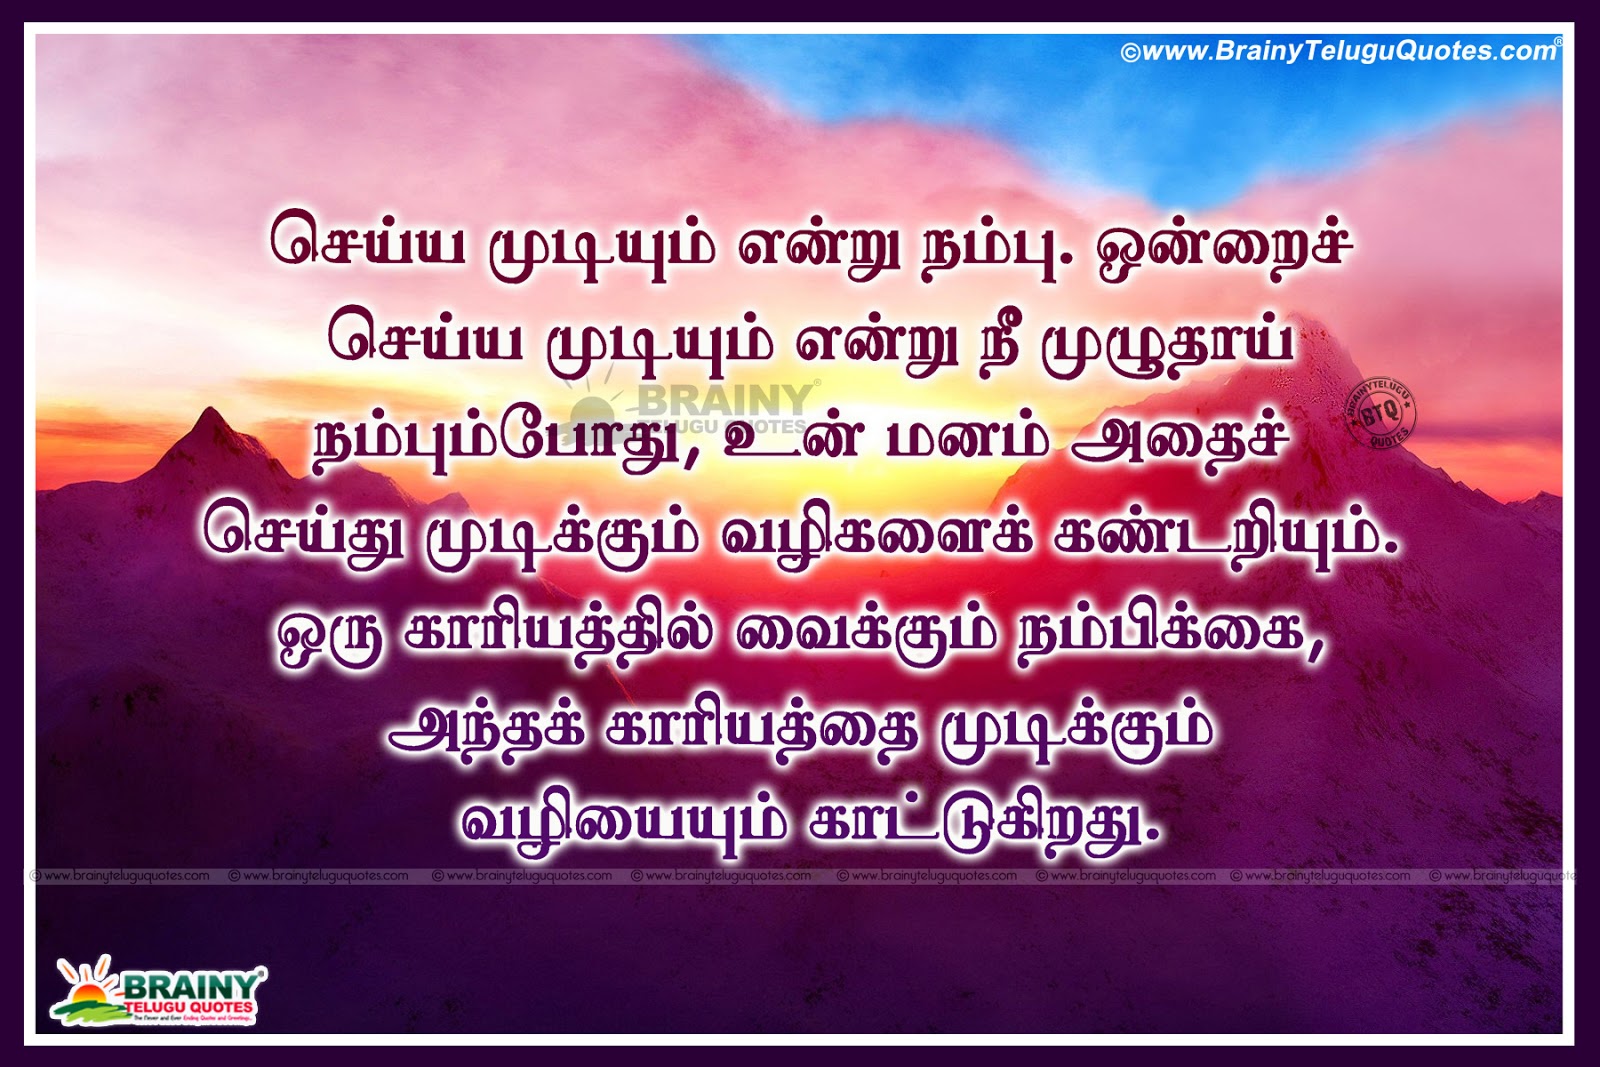 Trending Famous Tamil Inspirational Sayings in Tamil-Tamil Success